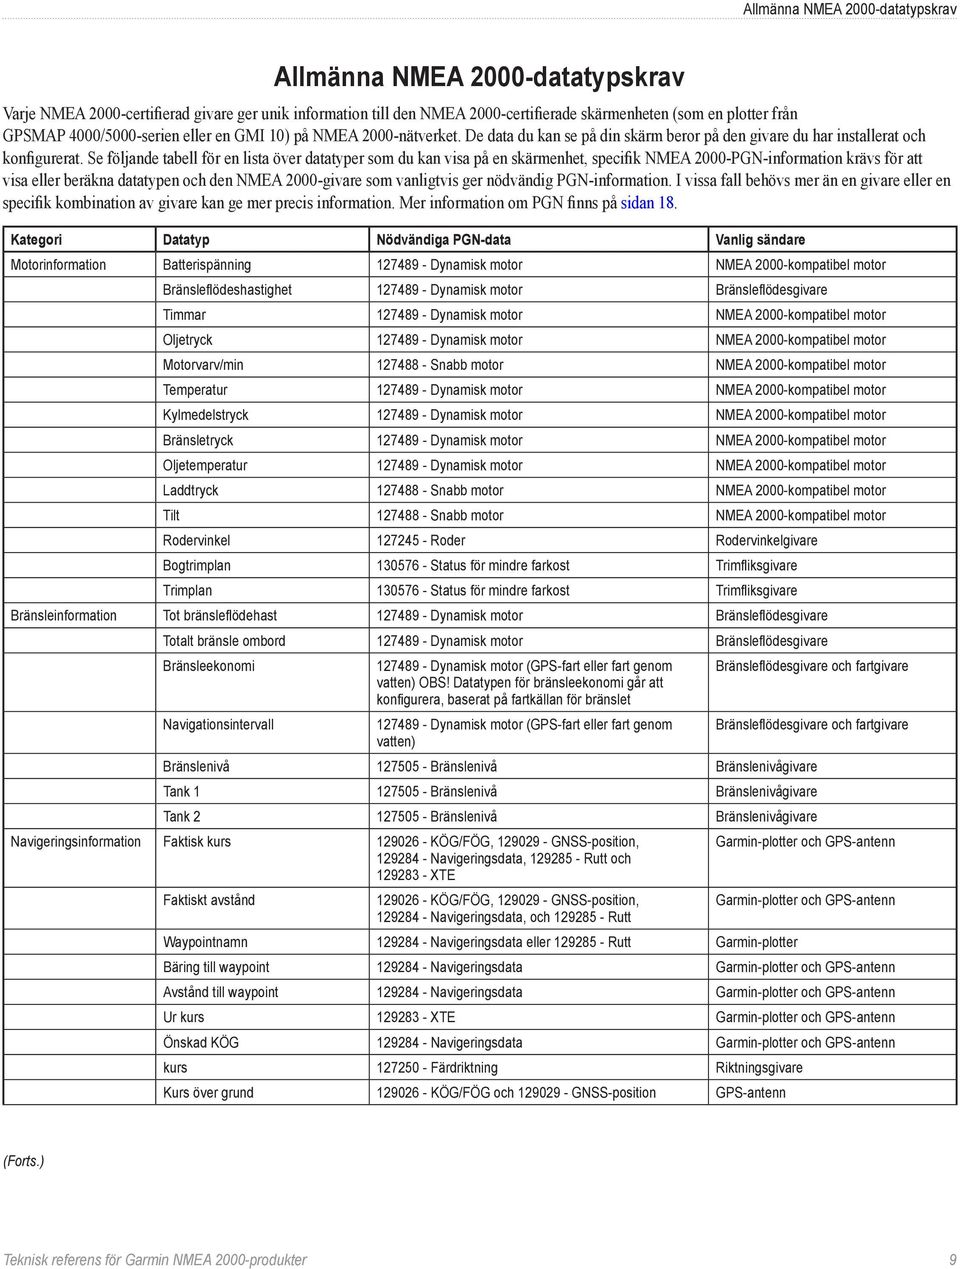 Se följande tabell för en lista över datatyper som du kan visa på en skärmenhet, specifik NMEA 2000-PGN-information krävs för att visa eller beräkna datatypen och den NMEA 2000-givare som vanligtvis